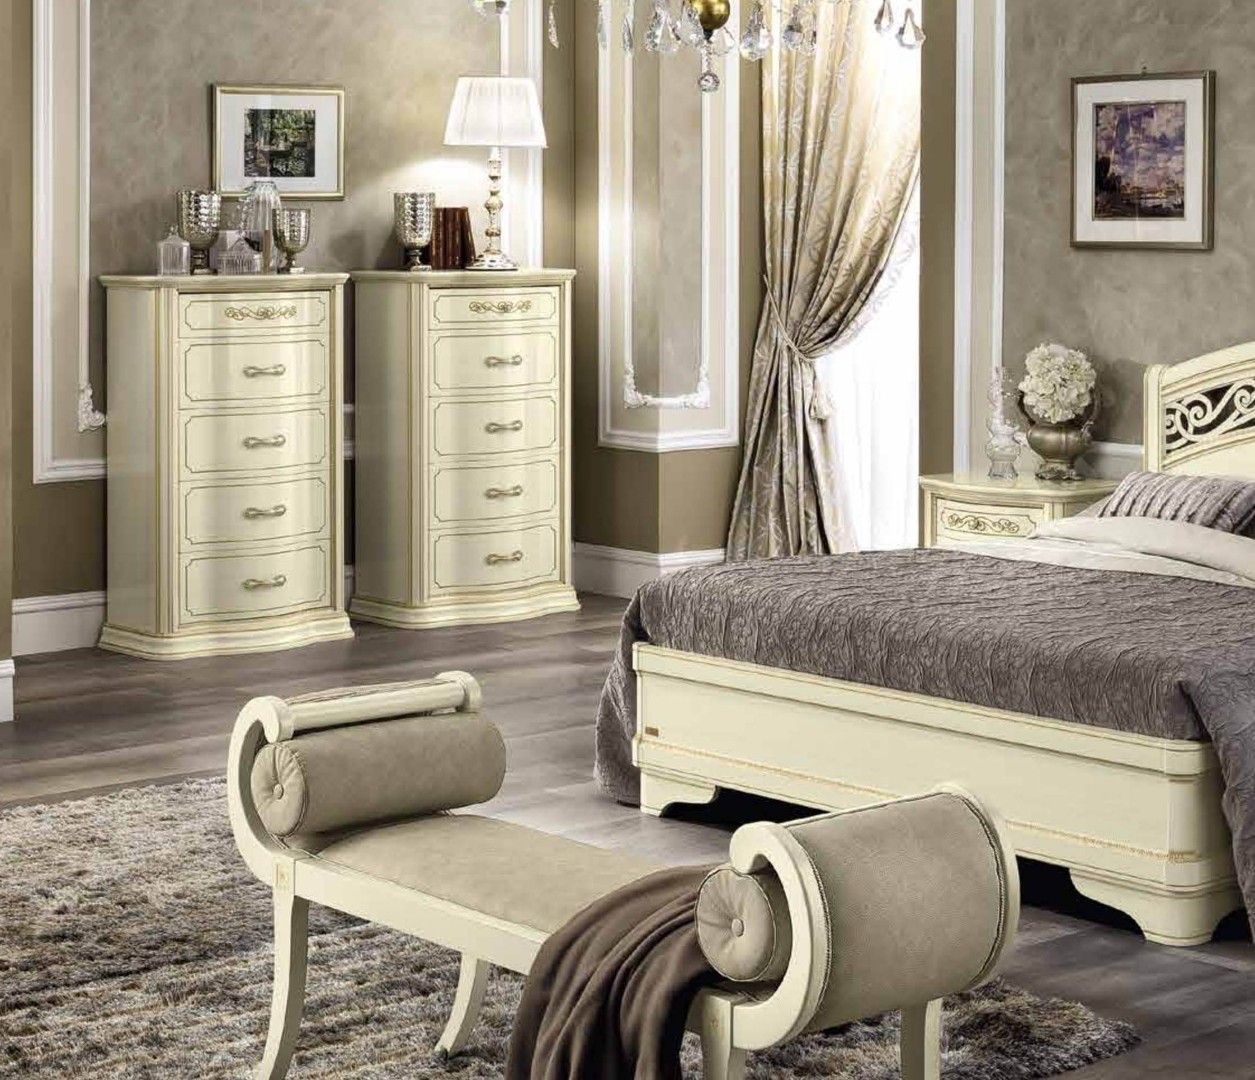 мебель для спальни из италии